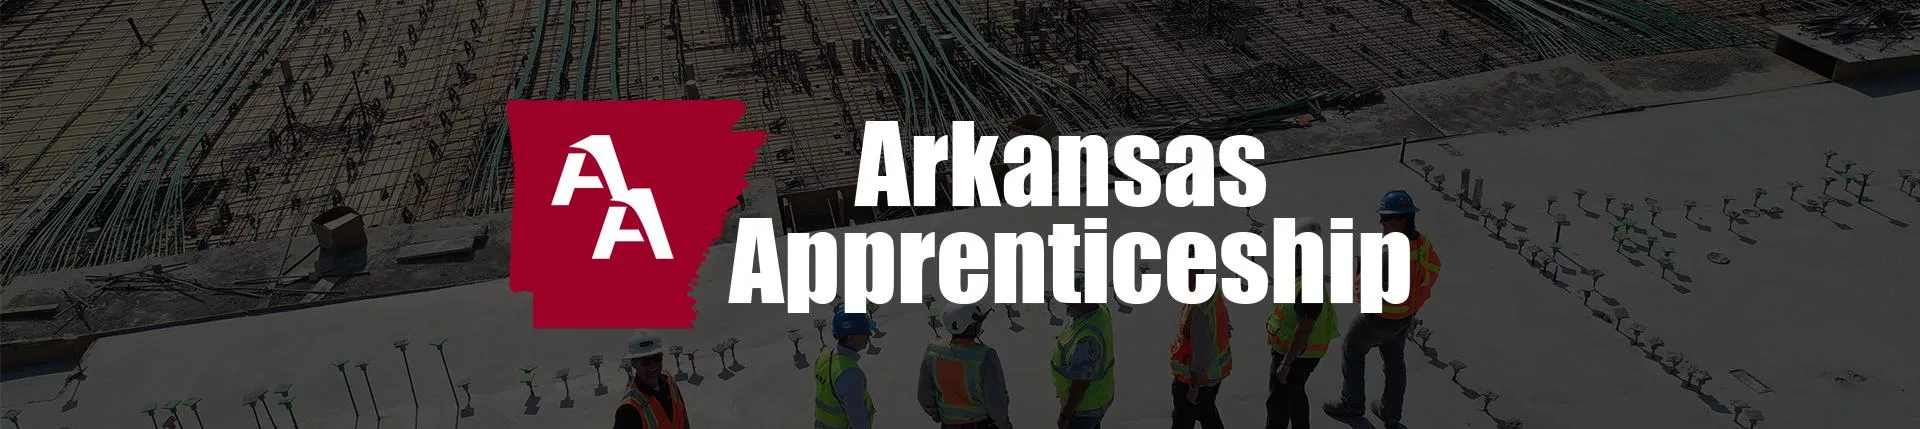 arkansas_apprenticeship_header.jpg